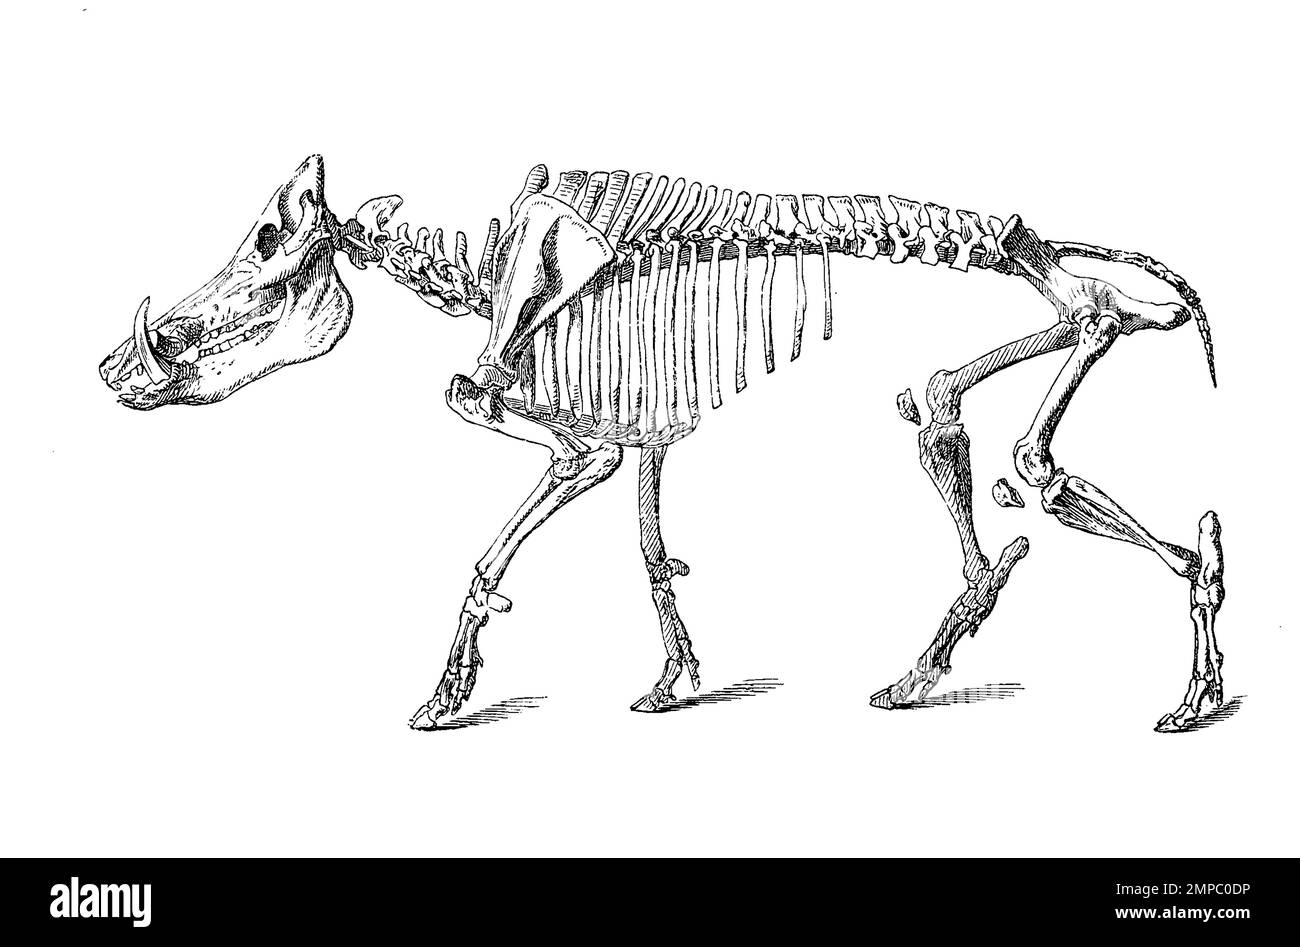 Skelett des Wildschwein, Sus scrofa,, Historisch, digital restaurierte Reproduktion von einer Vorlage aus dem 18. Jahrhundert, Stock Photo